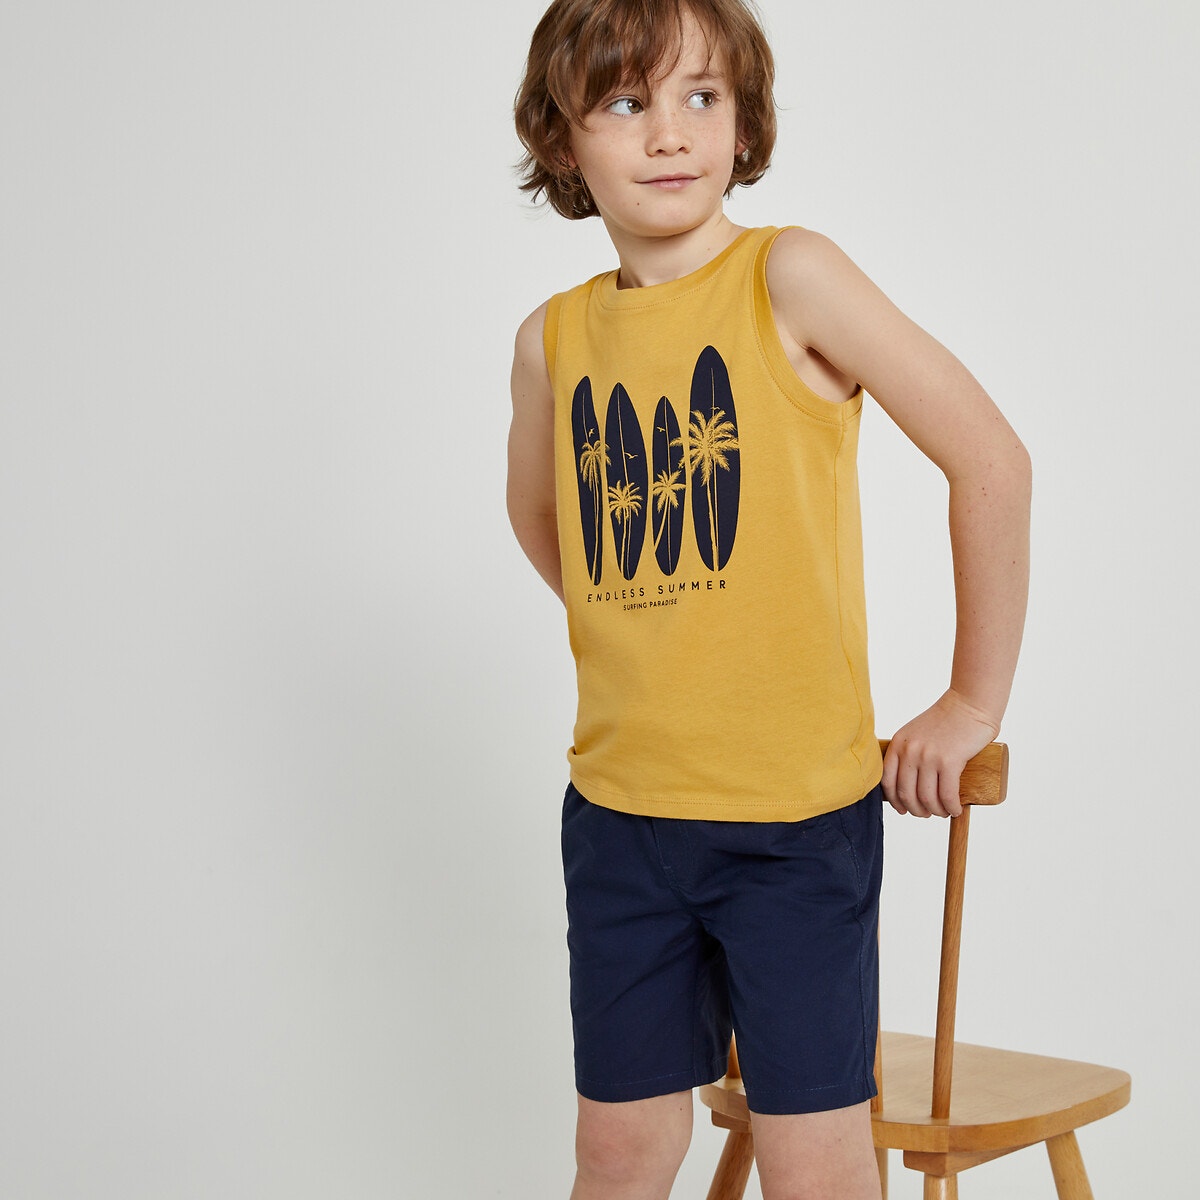 Μόδα > Παιδικά > Αγόρι > T-shirt, πόλο > Αμάνικες μπλούζες Σετ 3 αμάνικες μπλούζες